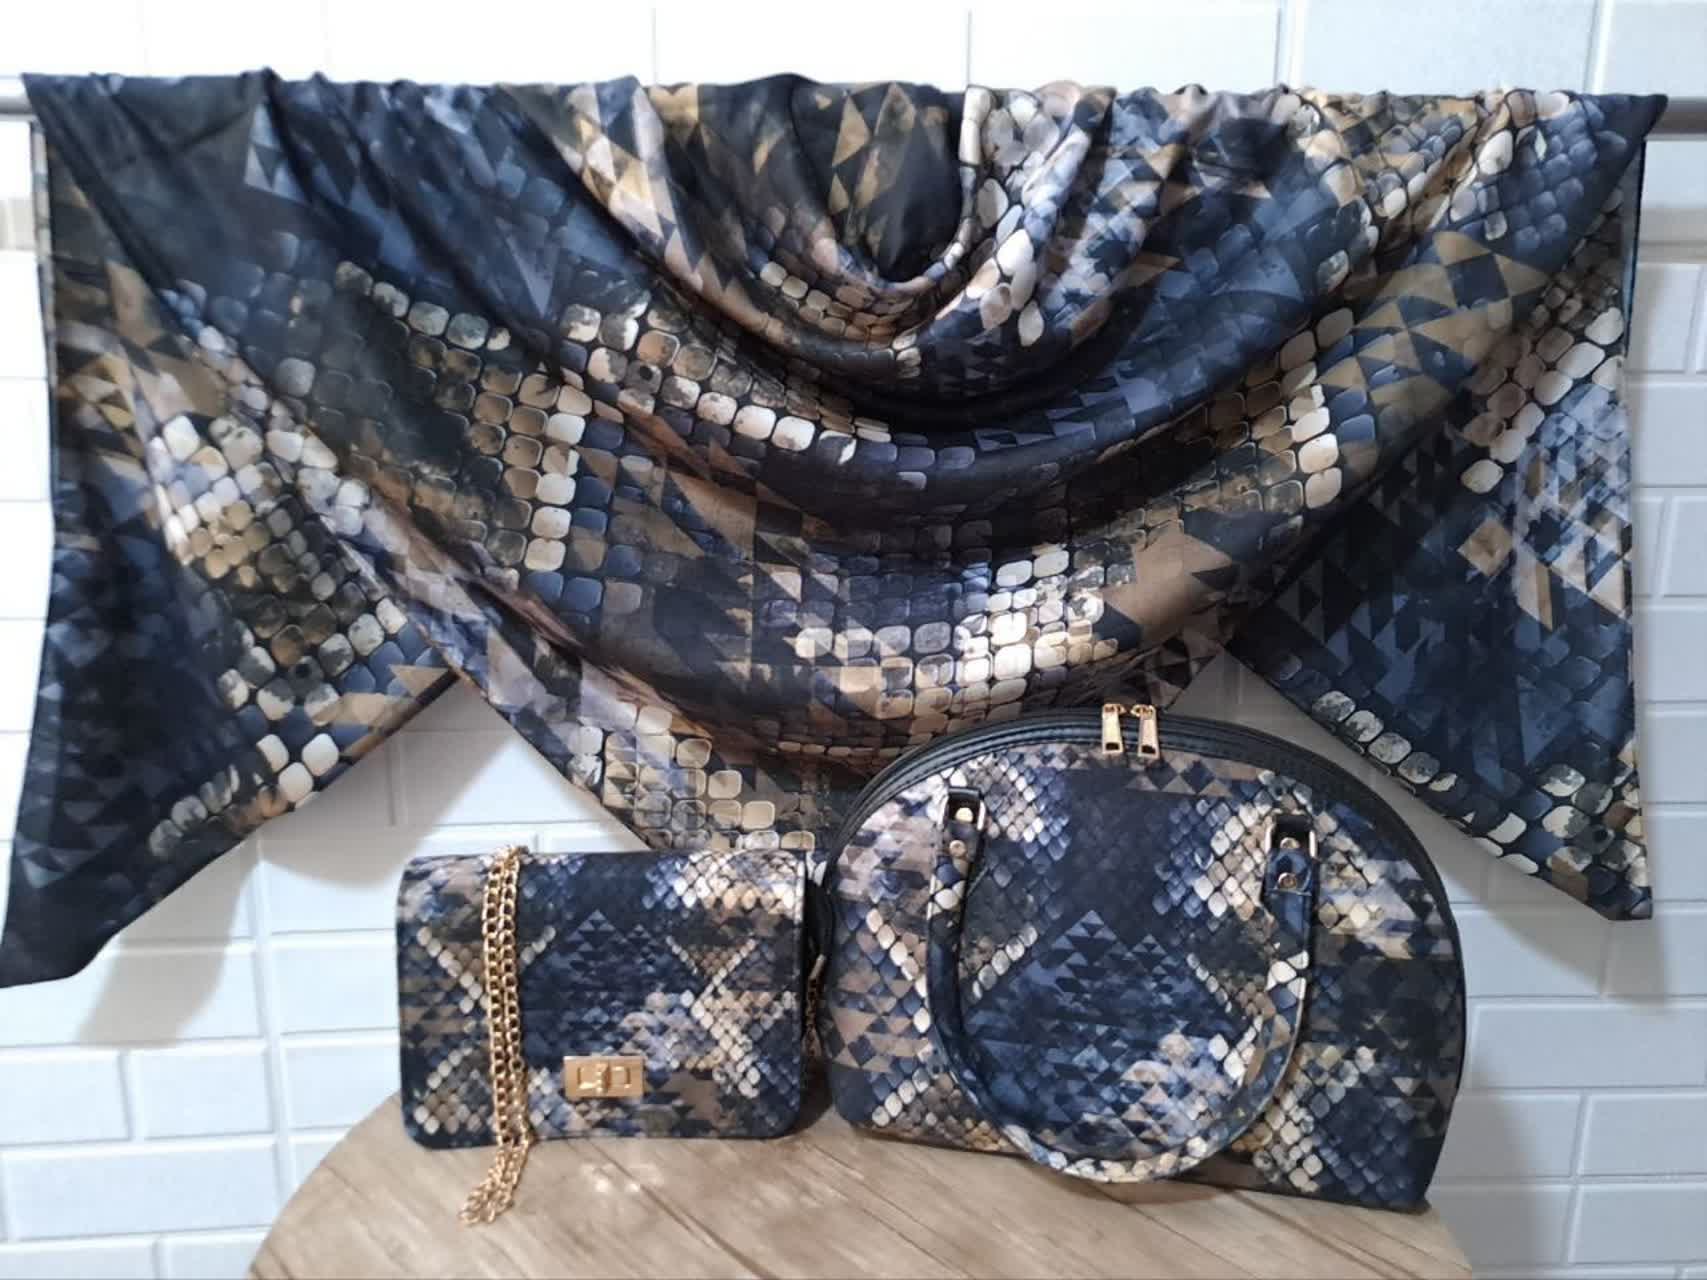 ست کیف و روسری زنانه با کیف نیمگرد رنگ مشکی قهوه ای با ارسال رایگان کد na1482